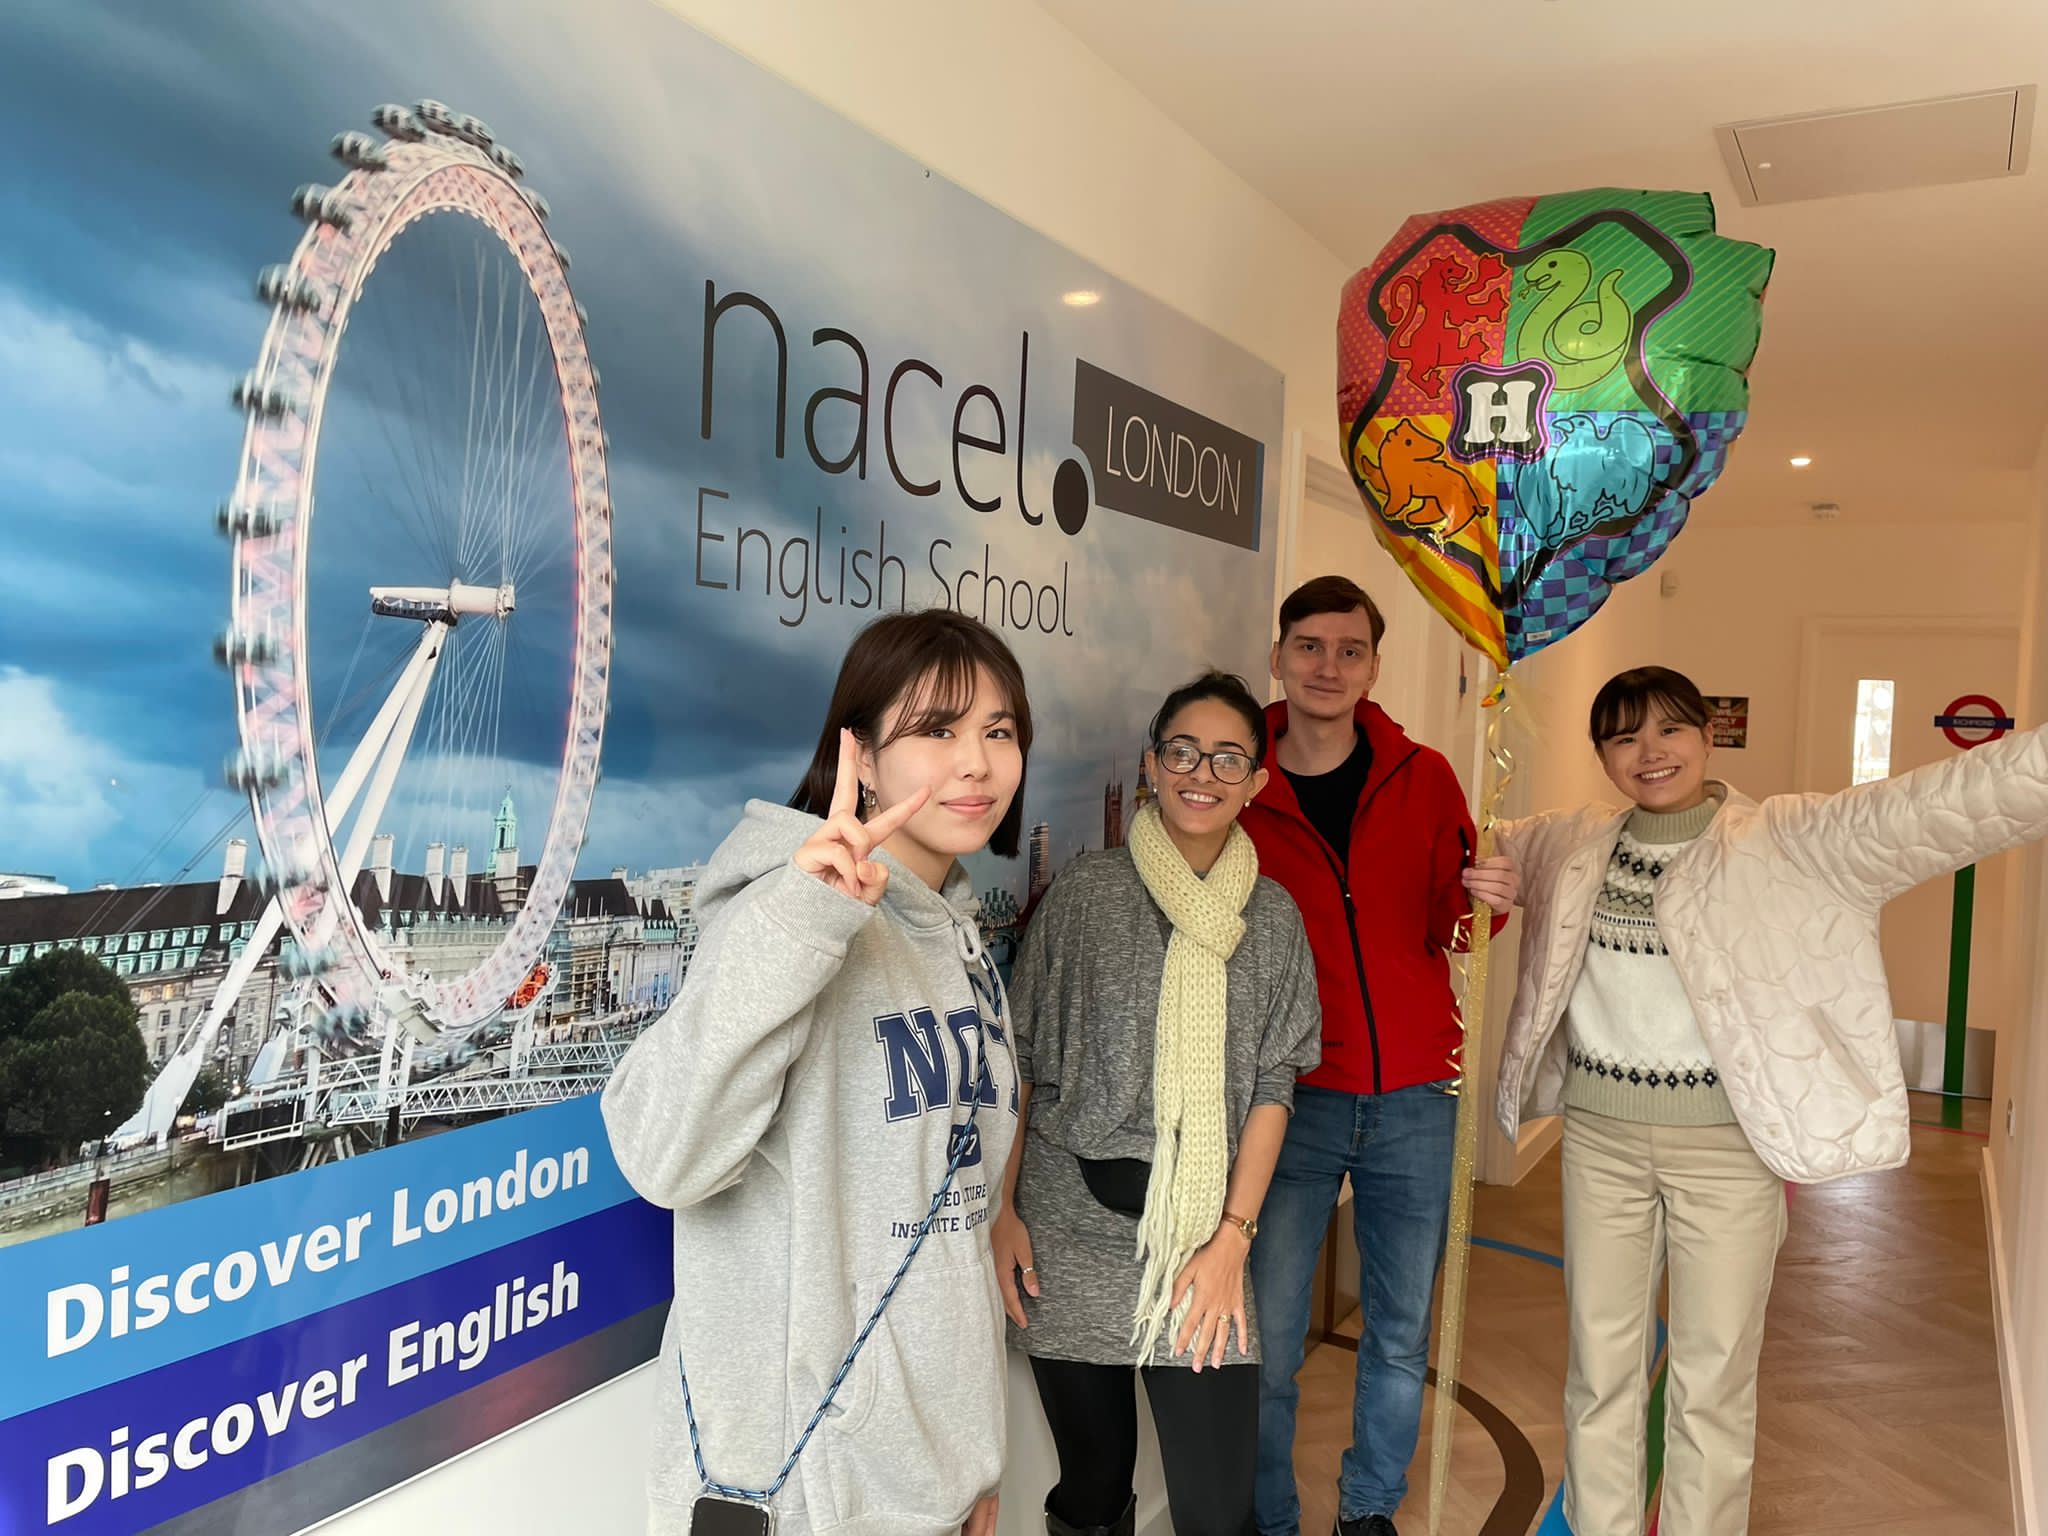 TOEFL ve IELTS sınavları - İngilizce sınavınıza Nacel English School London'da hazırlanın